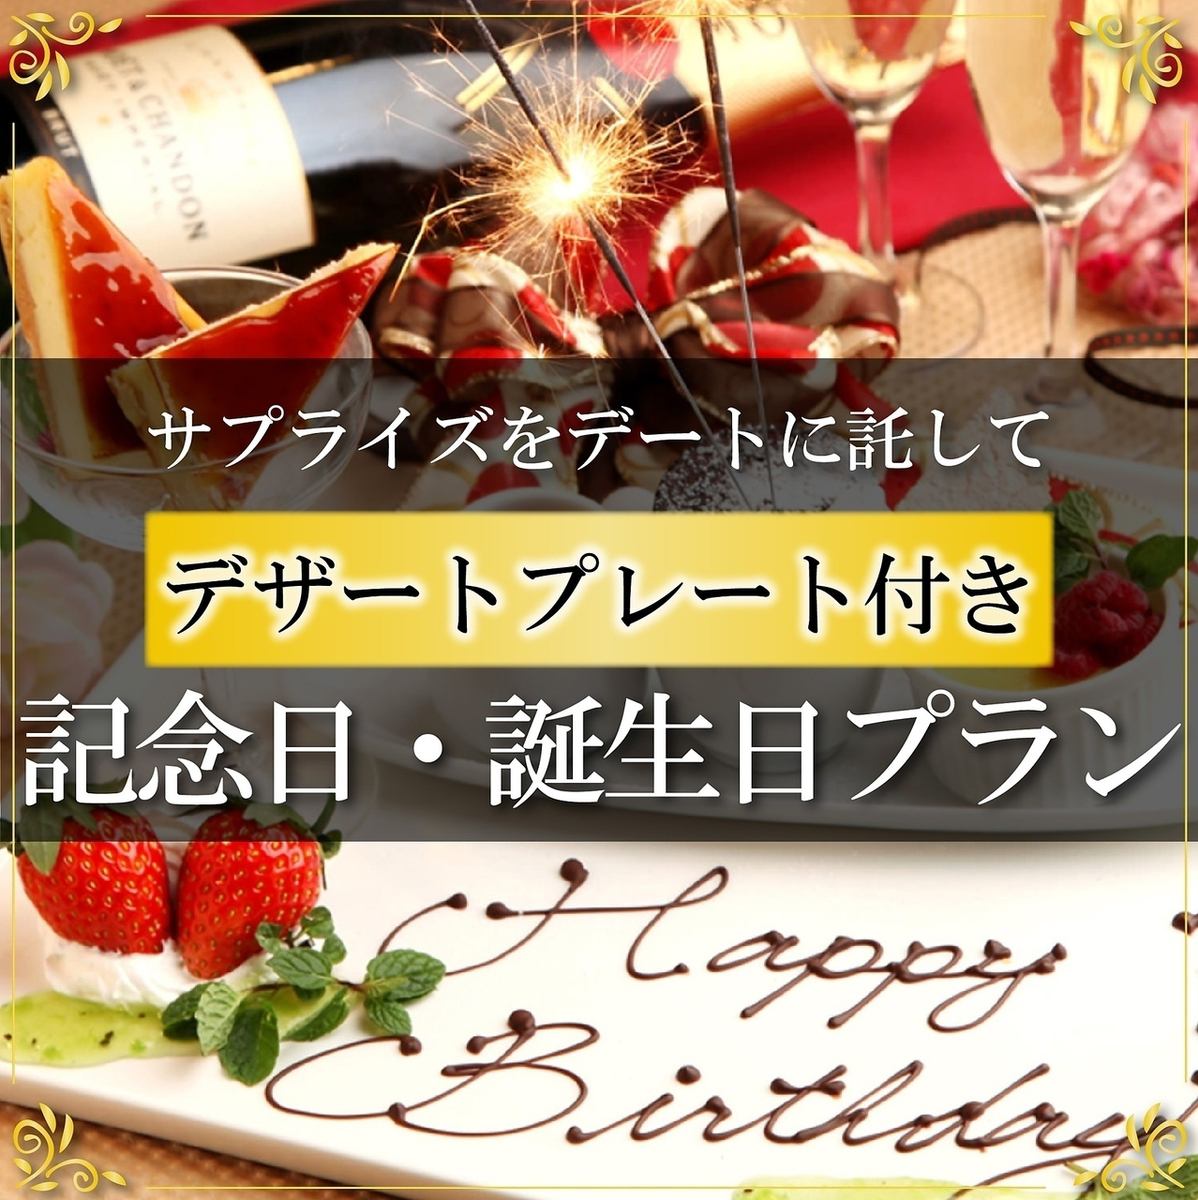 生日和纪念日会提供特别蛋糕或起泡酒♪